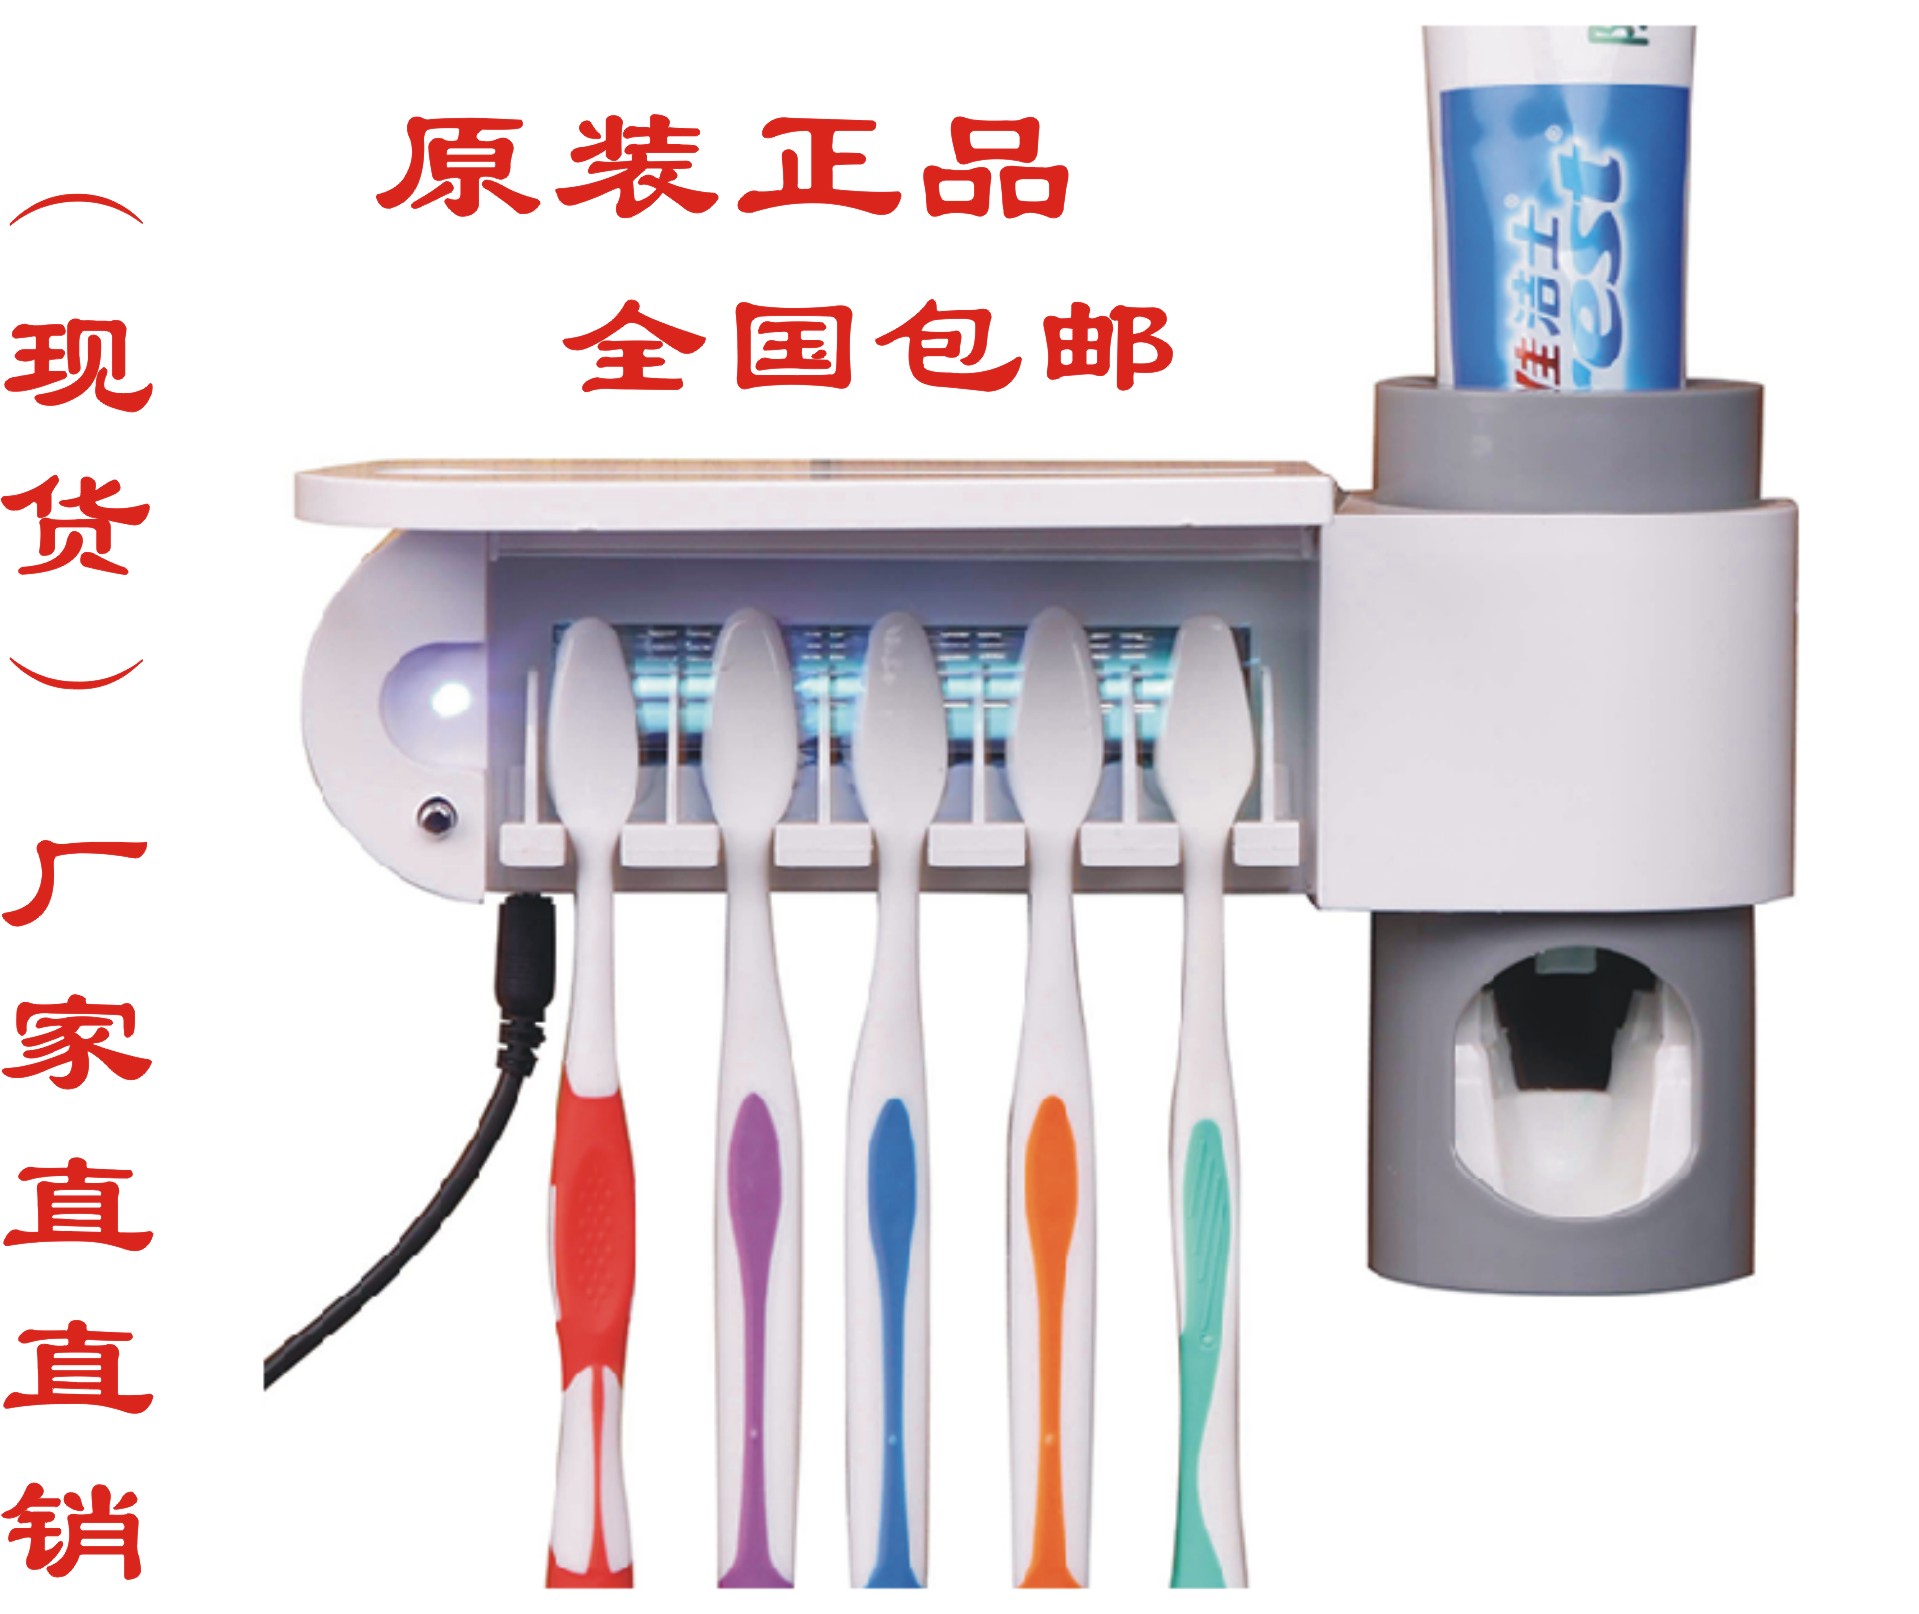 卫舒洁消毒牙刷架 紫外线杀菌自动挤牙膏器 插电式家庭洗漱套装